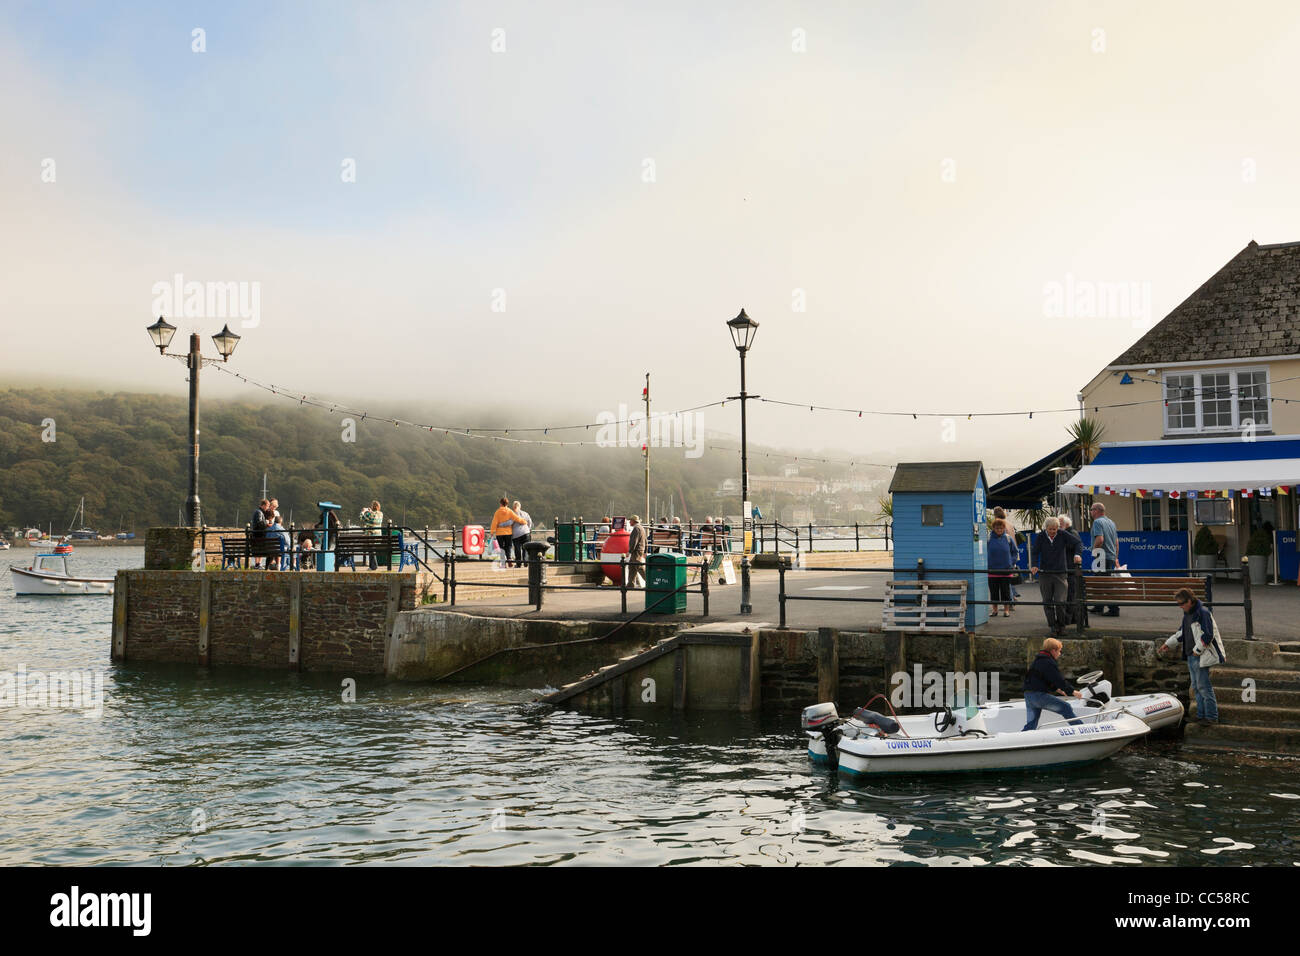 Fowey, Cornwall, Angleterre, Royaume-Uni, Grande Bretagne. Les gens sur le quai au bord de la mer avec compensation de la brume sur les collines Banque D'Images